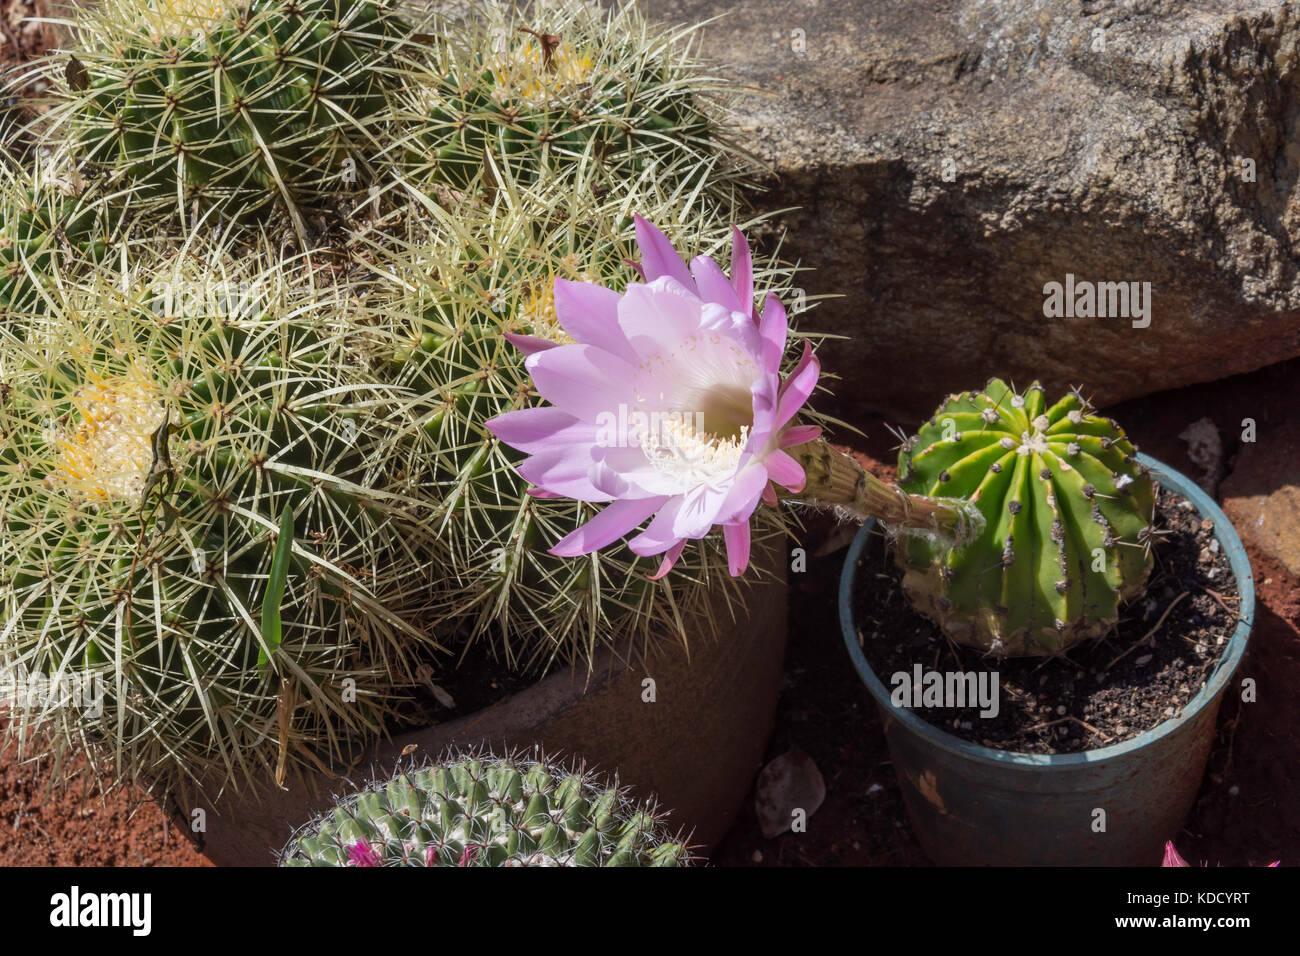 Flower of Echinopsis oxygona cactus, Arizona, United States of America Stock Photo